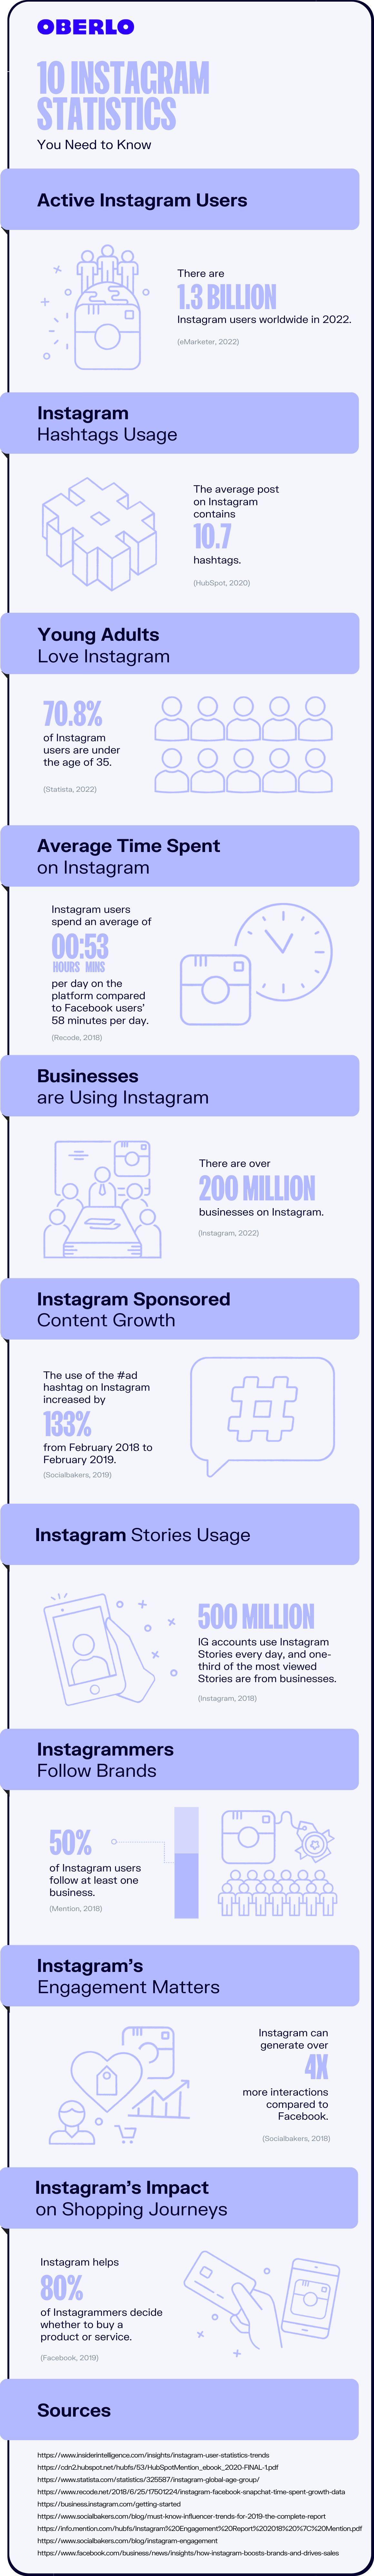 instagram statistics full infographic